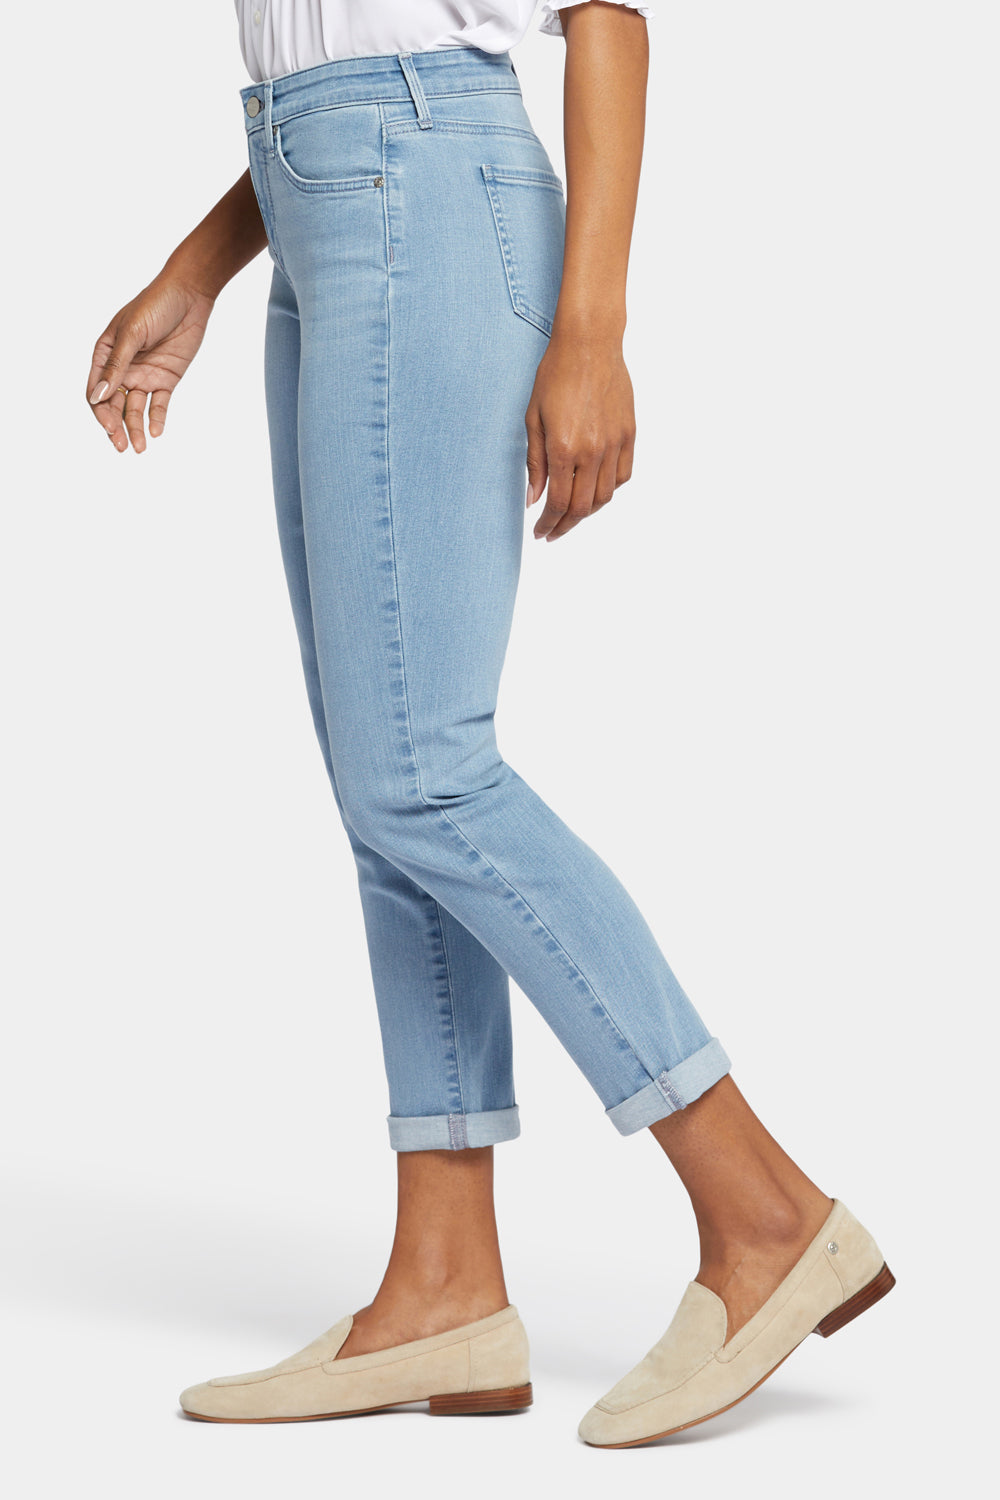 NYDJ Margot Girlfriend Jeans In Petite In Cool Embrace® Denim With Cuffs - Kingston